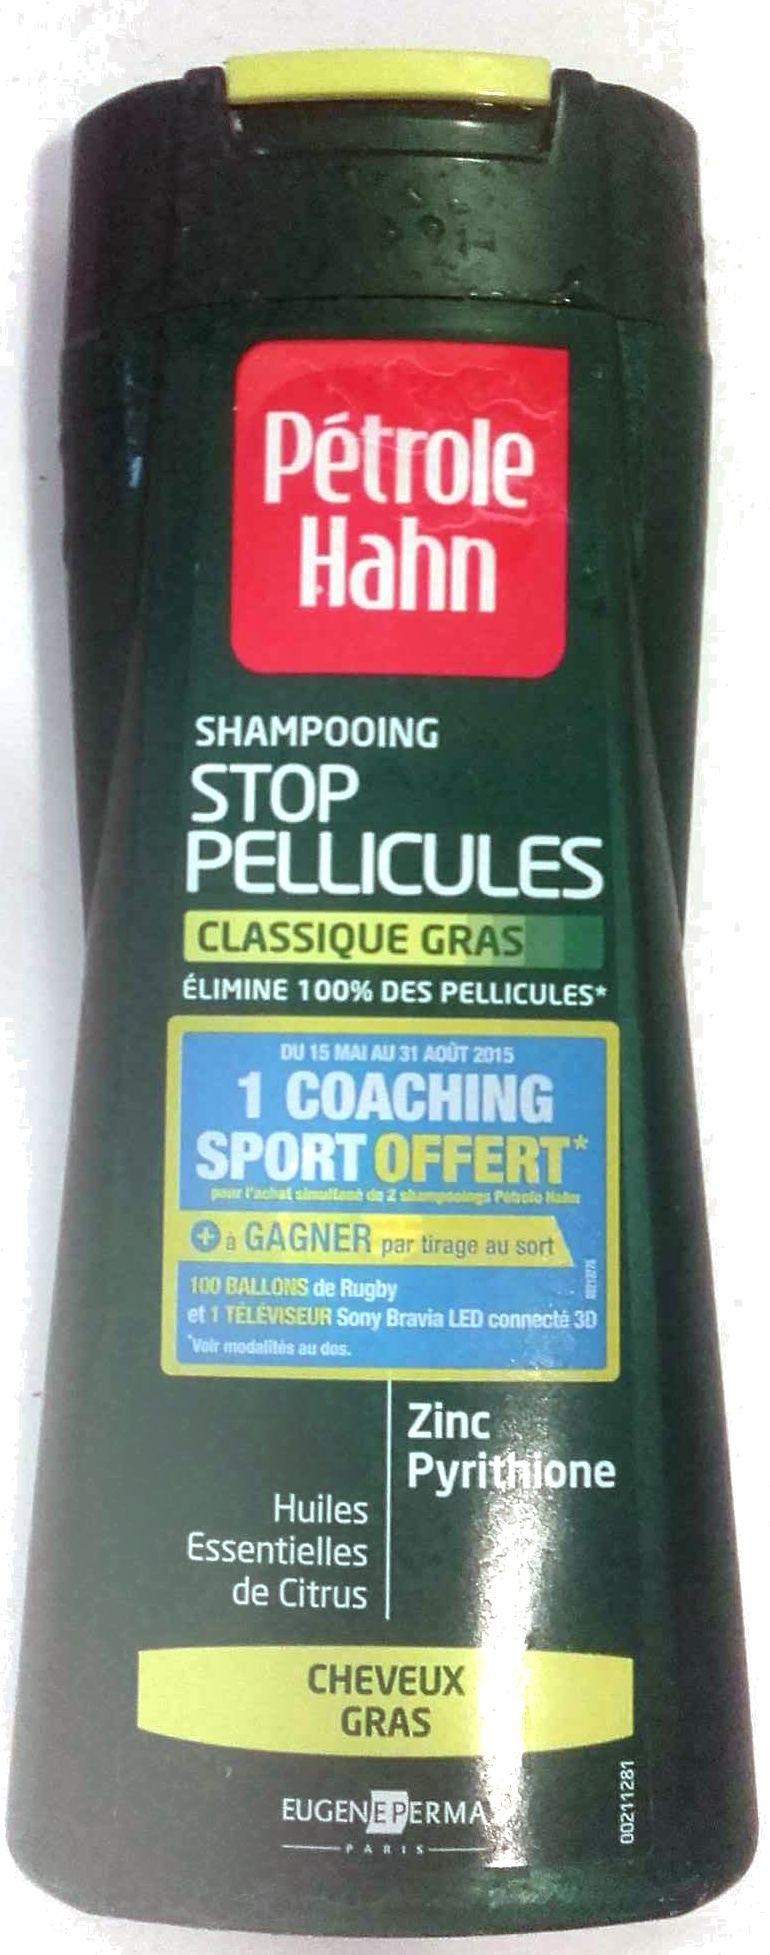 Shampooing Stop Pellicules Classique Gras - Produit - fr